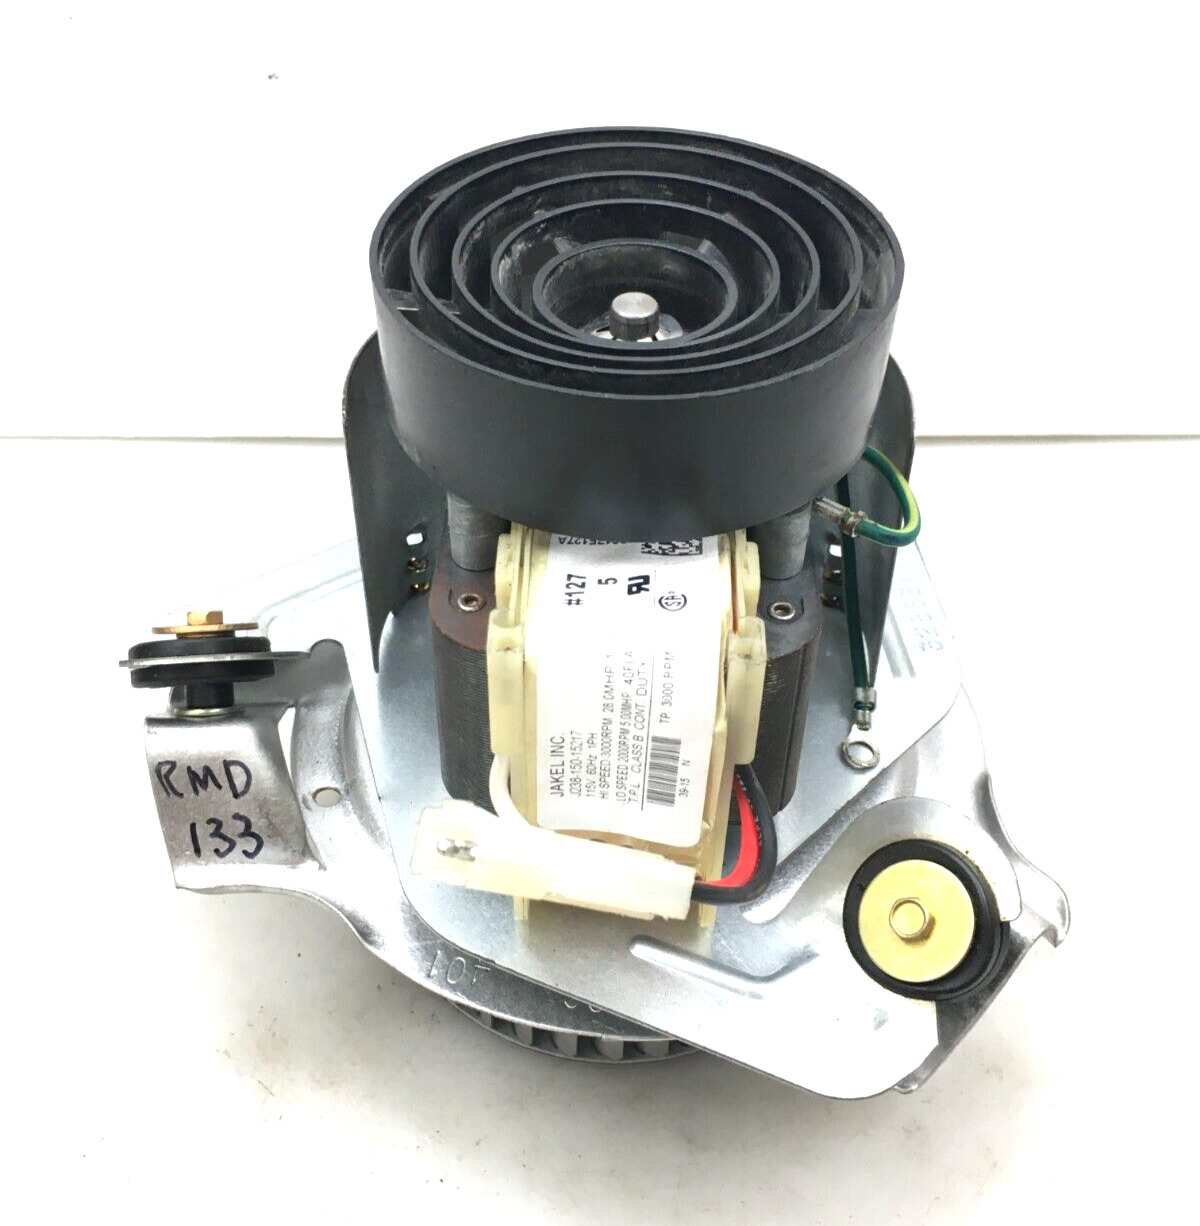 JAKEL J238-150-15217 Draft Inducer Blower Motor HC21ZE127A 115V used ref #RMD133